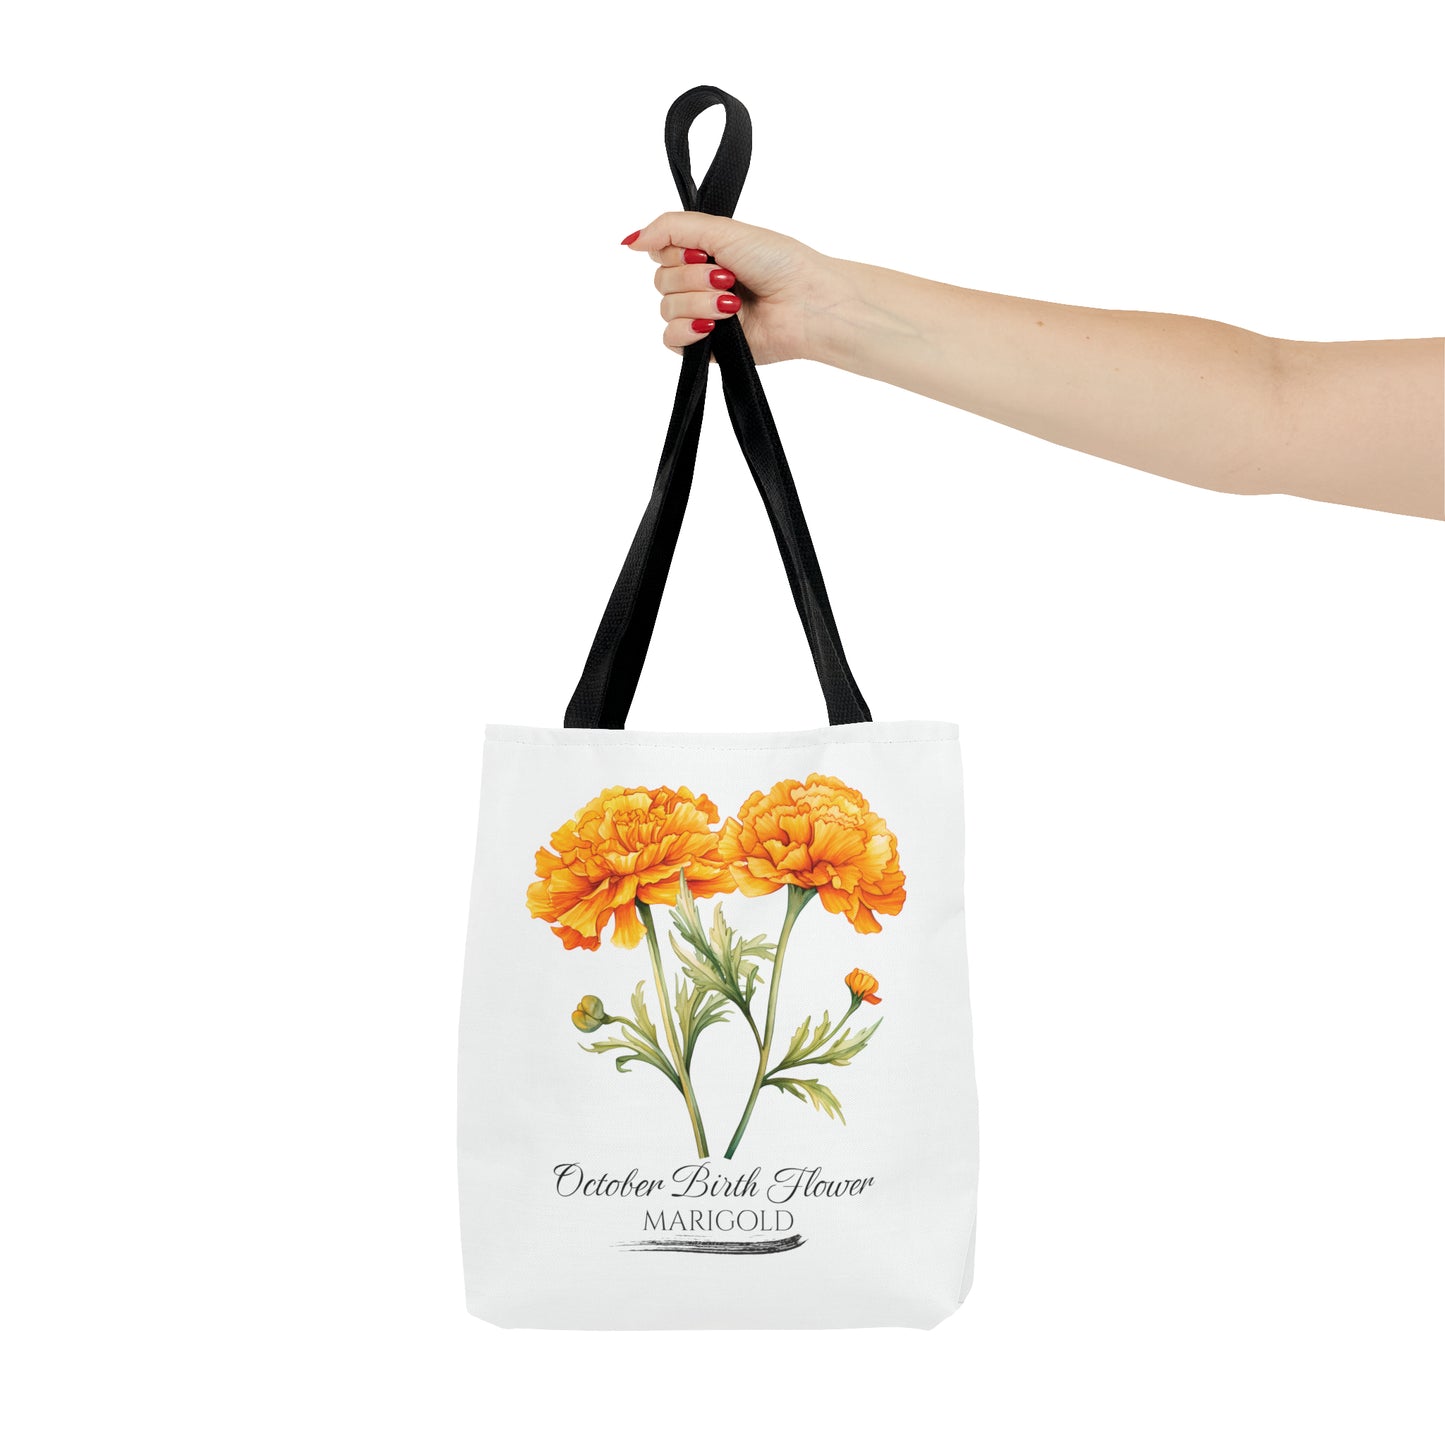 October Birth Flower: Marigold - Tote Bag (AOP)